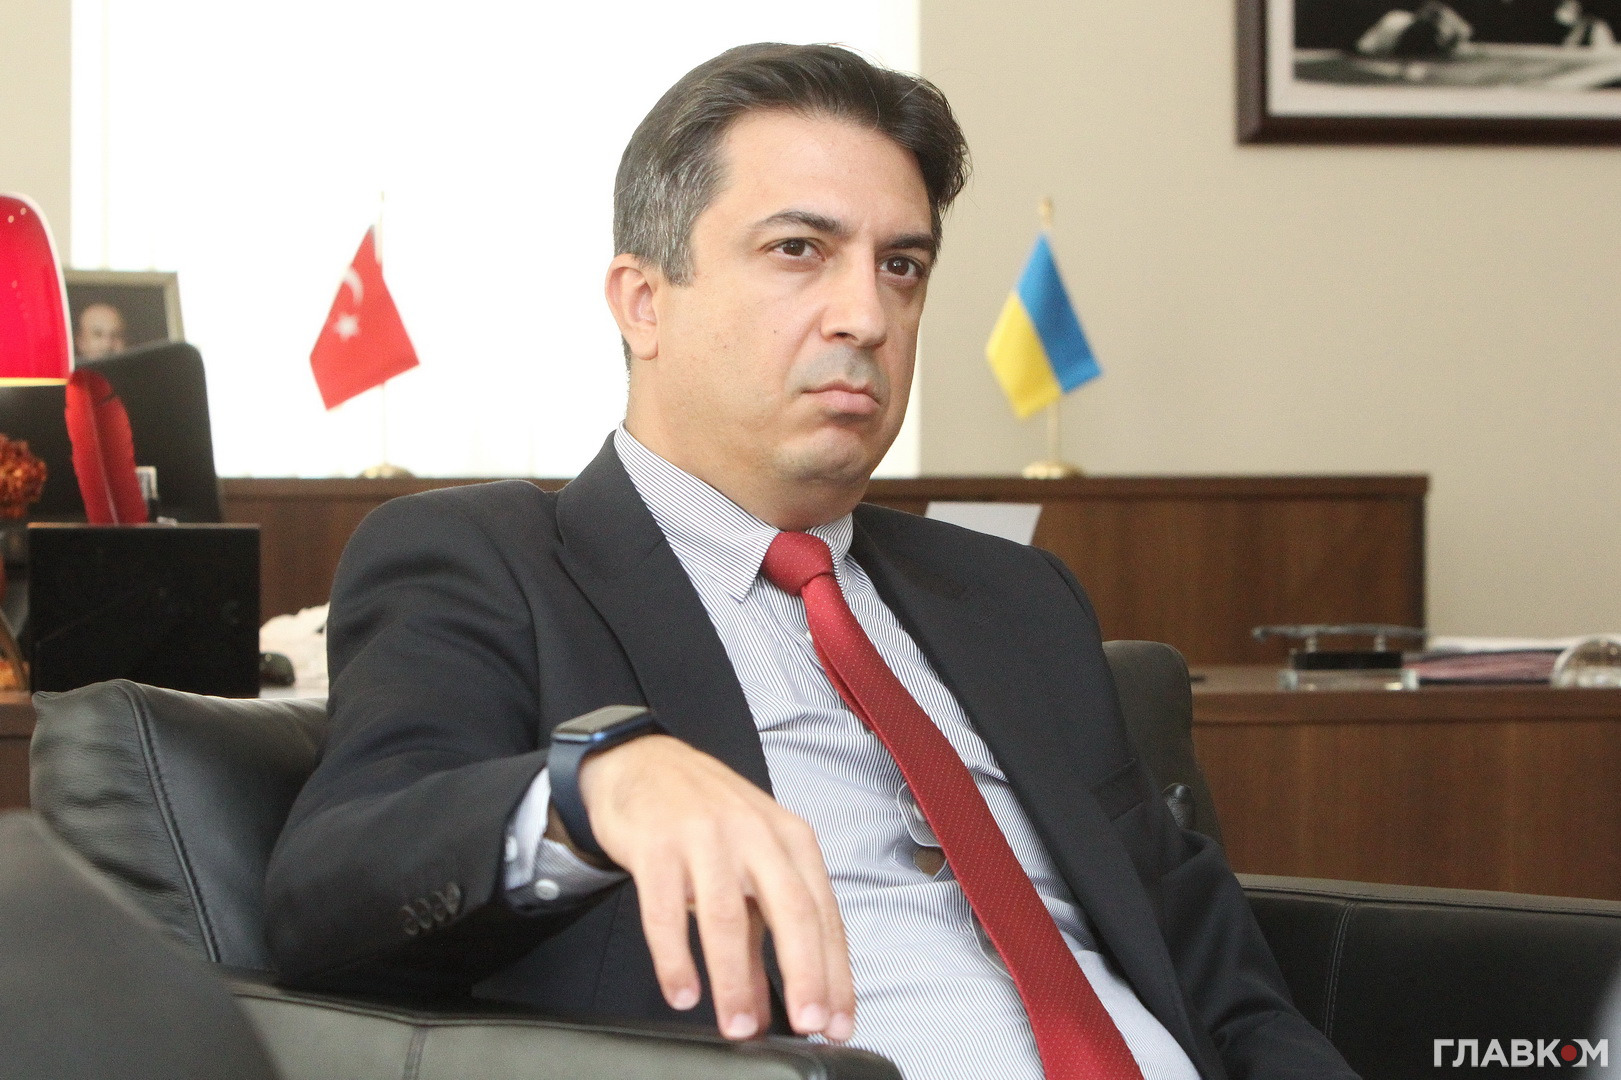 Надзвичайний і повноважний посол Туреччини в Україні Ягмур Ахмет Гюльдере